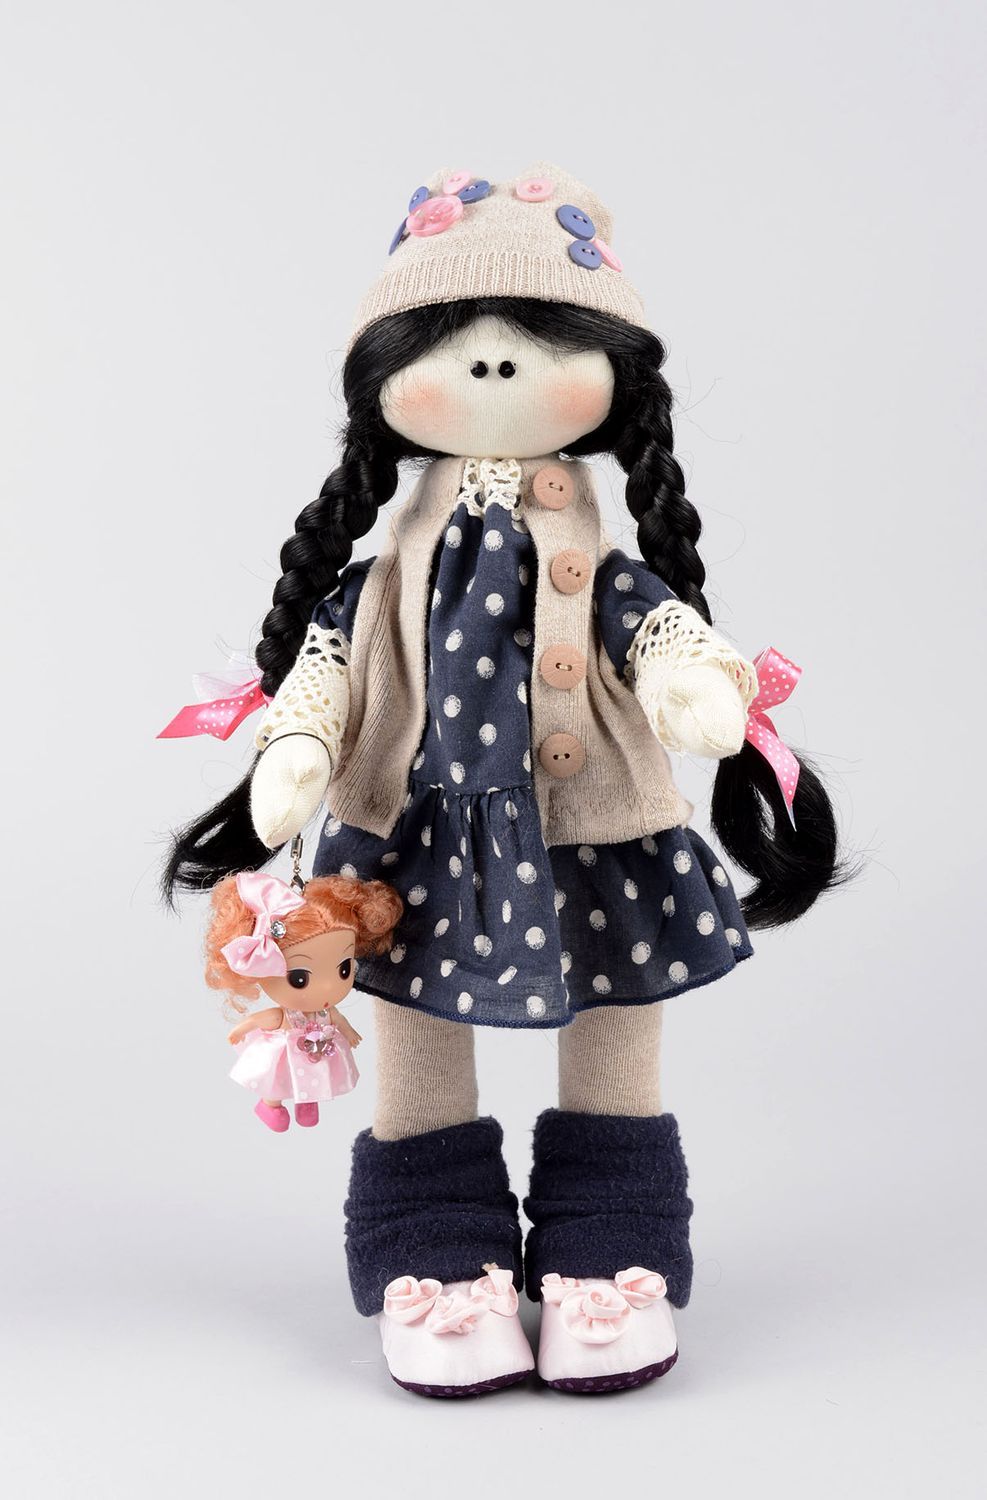 Handmade soft doll girl doll toys for kids nursery decor gifts for children photo 1